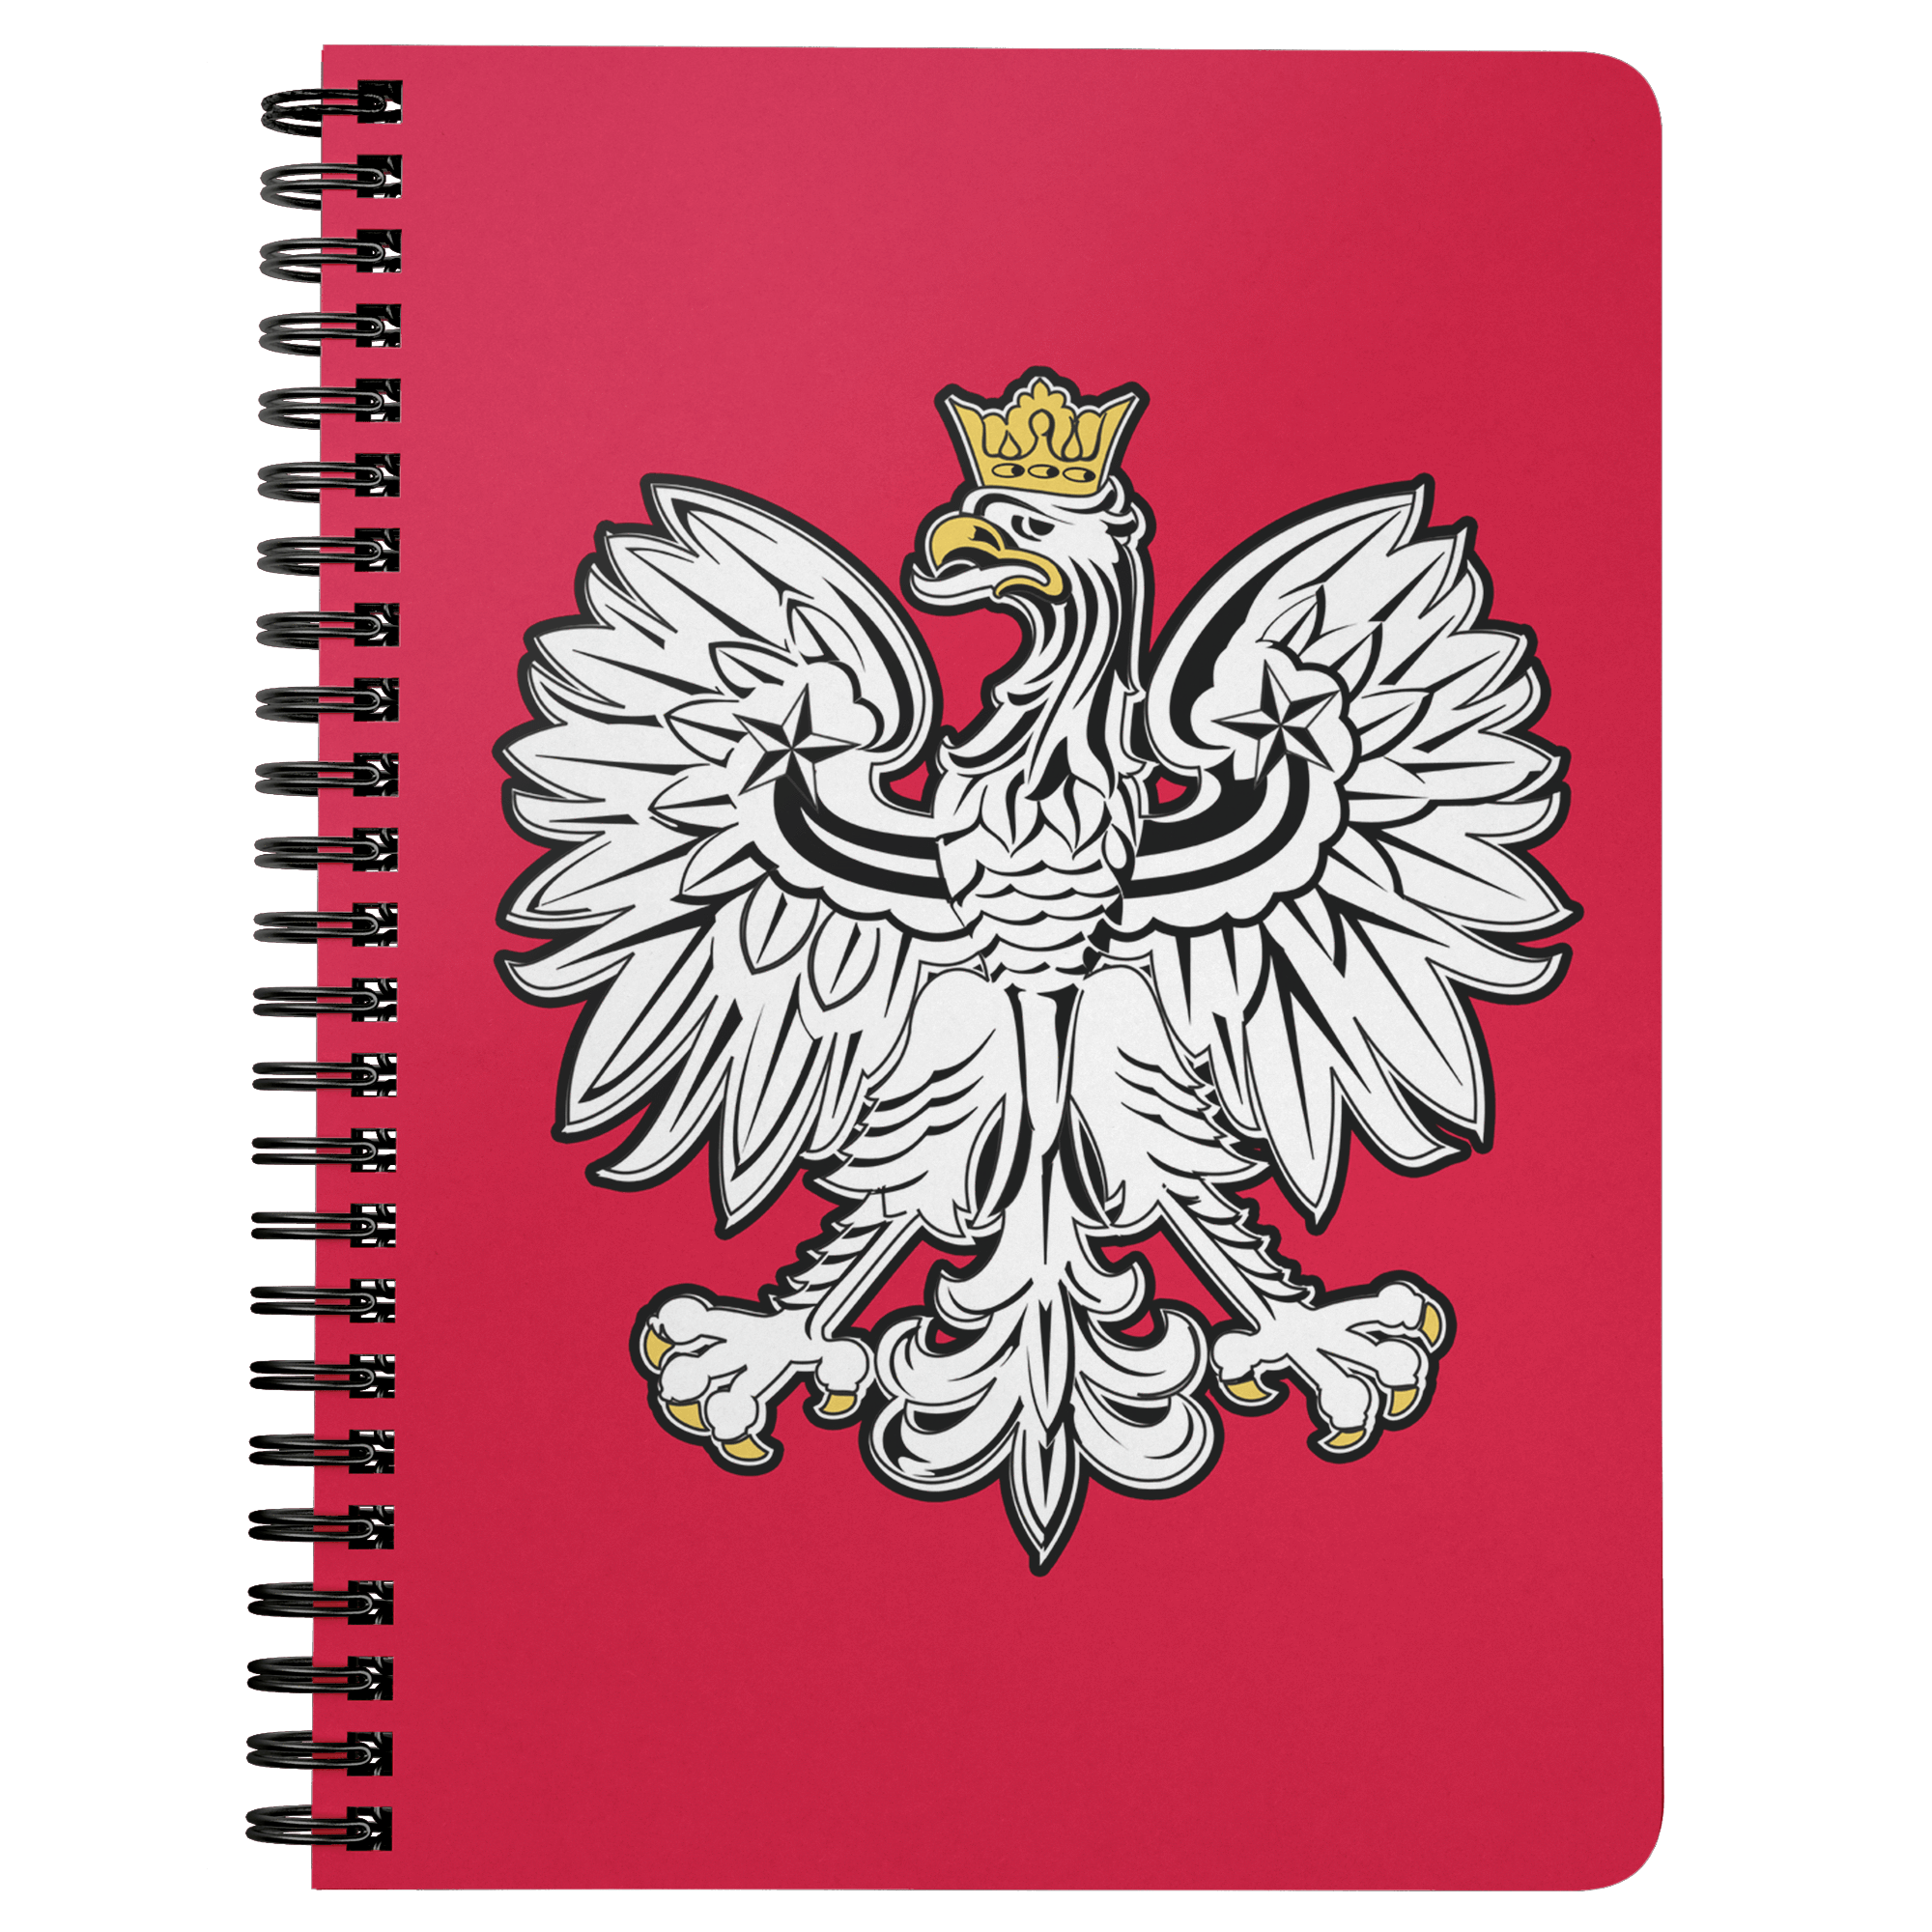 Polish Notebooks